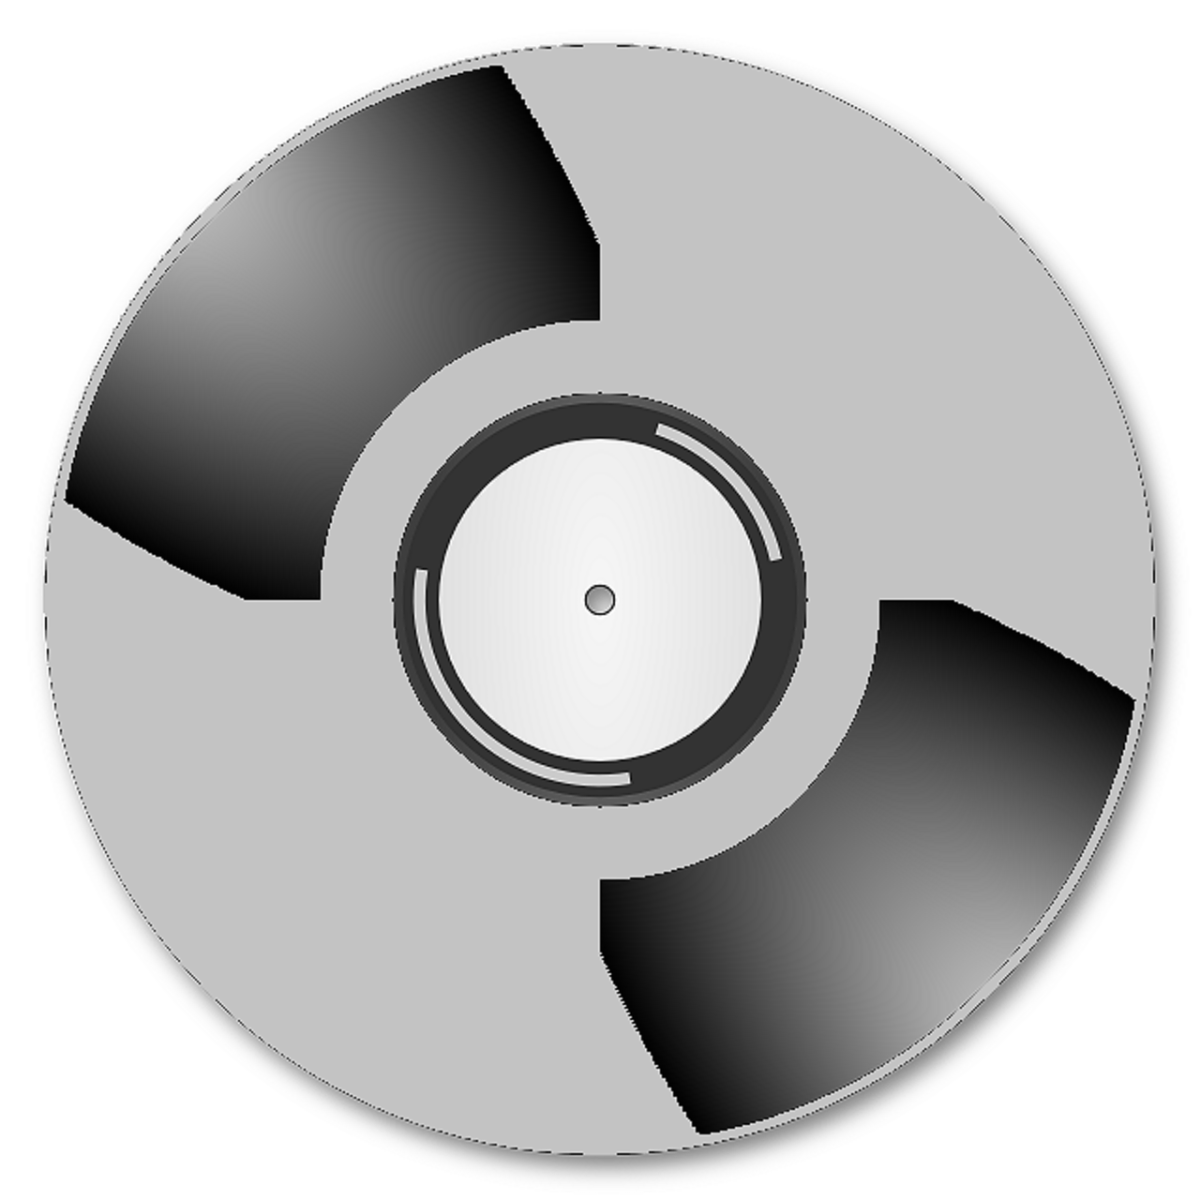 Cd user. Компьютерный диск. CD диск без фона. Музыкальный диск. Изображение на компактном диске.